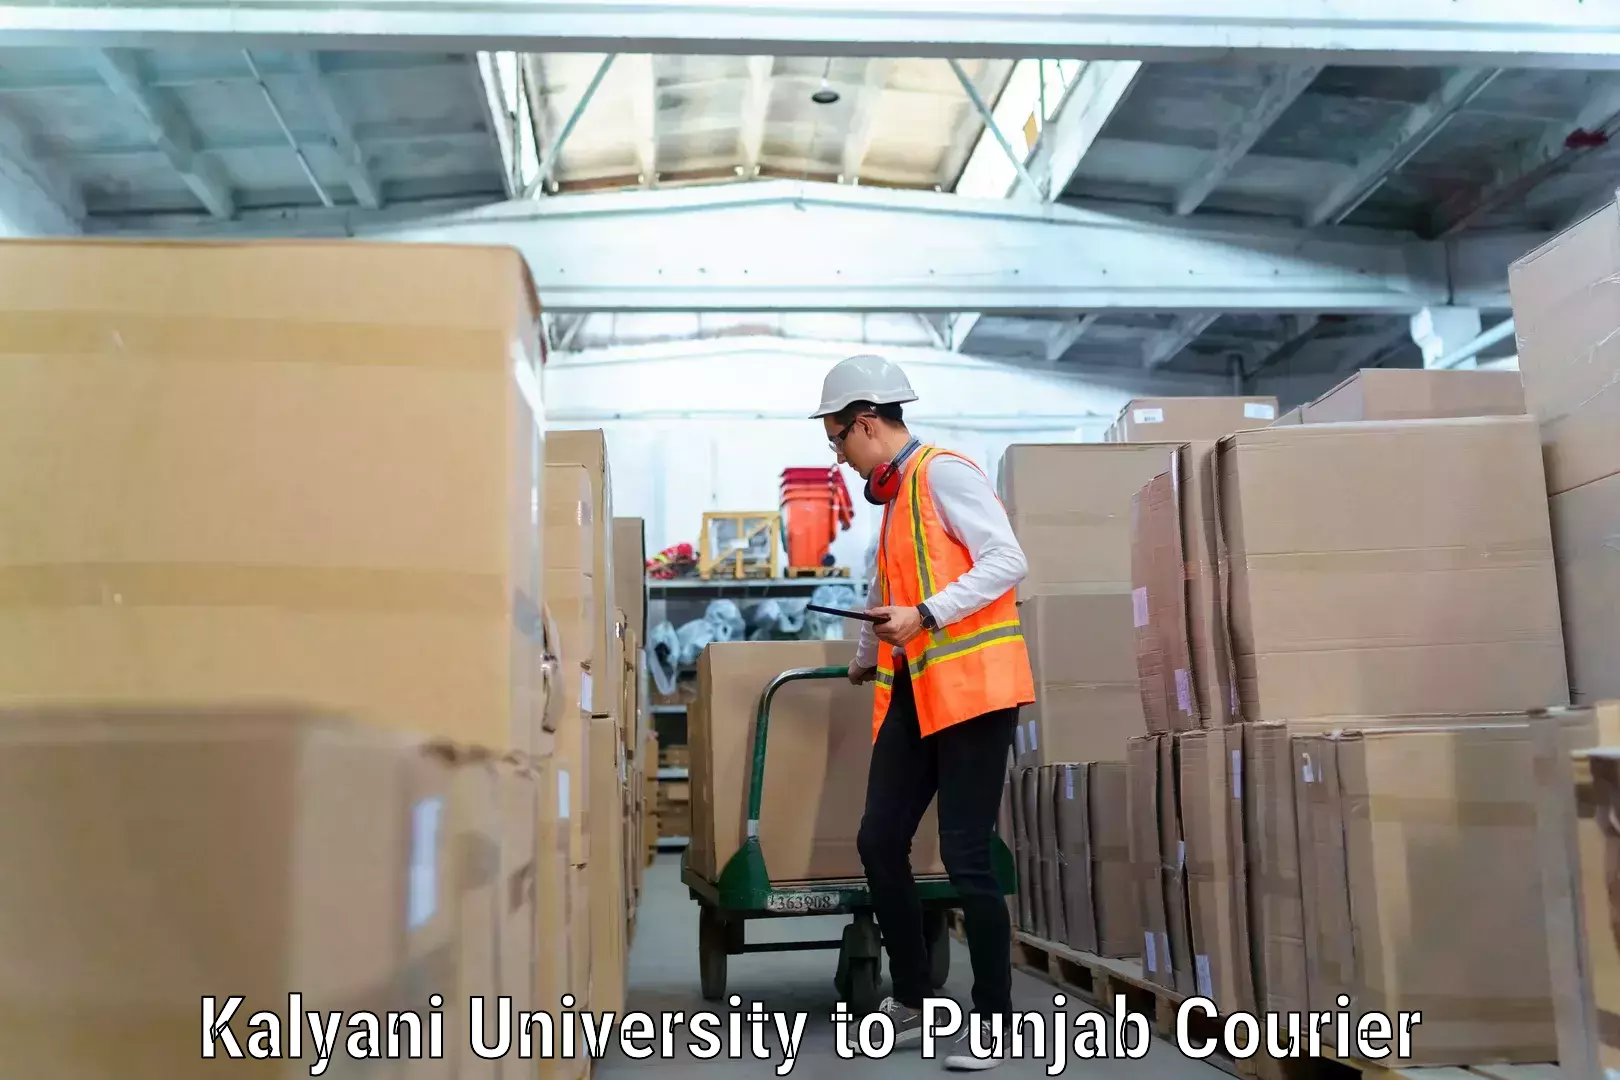 Expert moving and storage Kalyani University to Punjab